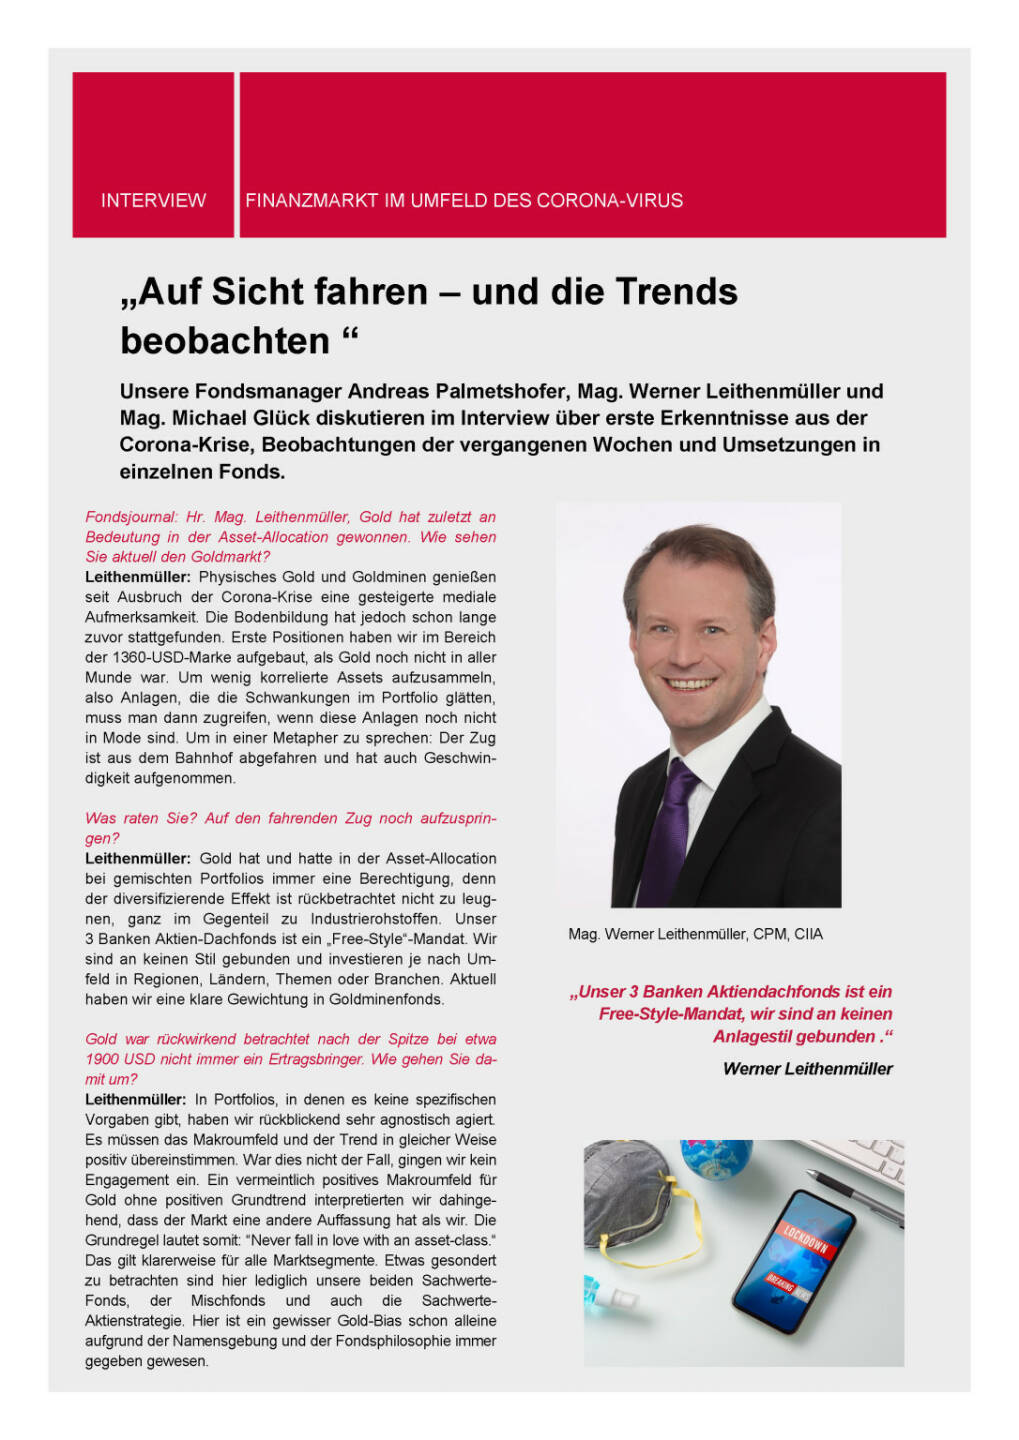 3 Banken-Generali Fonds Journal 06/2020 - „Auf Sicht fahren – und die Trends beobachten“  Interview Werner Leithenmüller